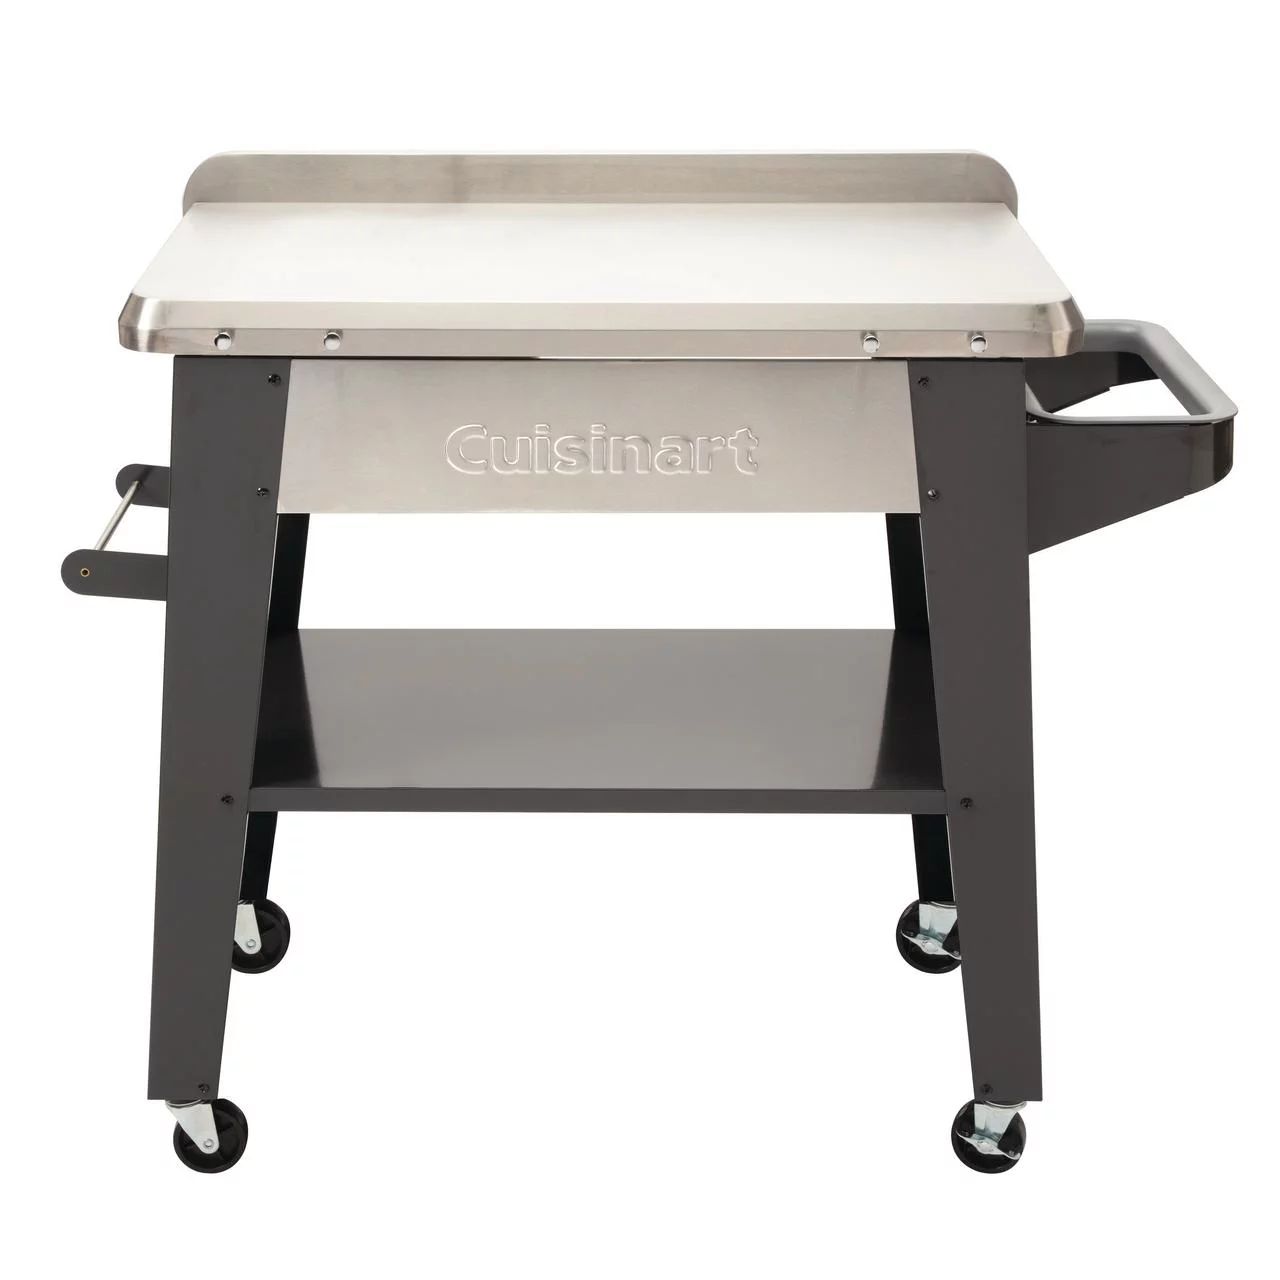 Cuisinart Stainless Steel Outdoor Prep Table - Walmart.com | Walmart (US)